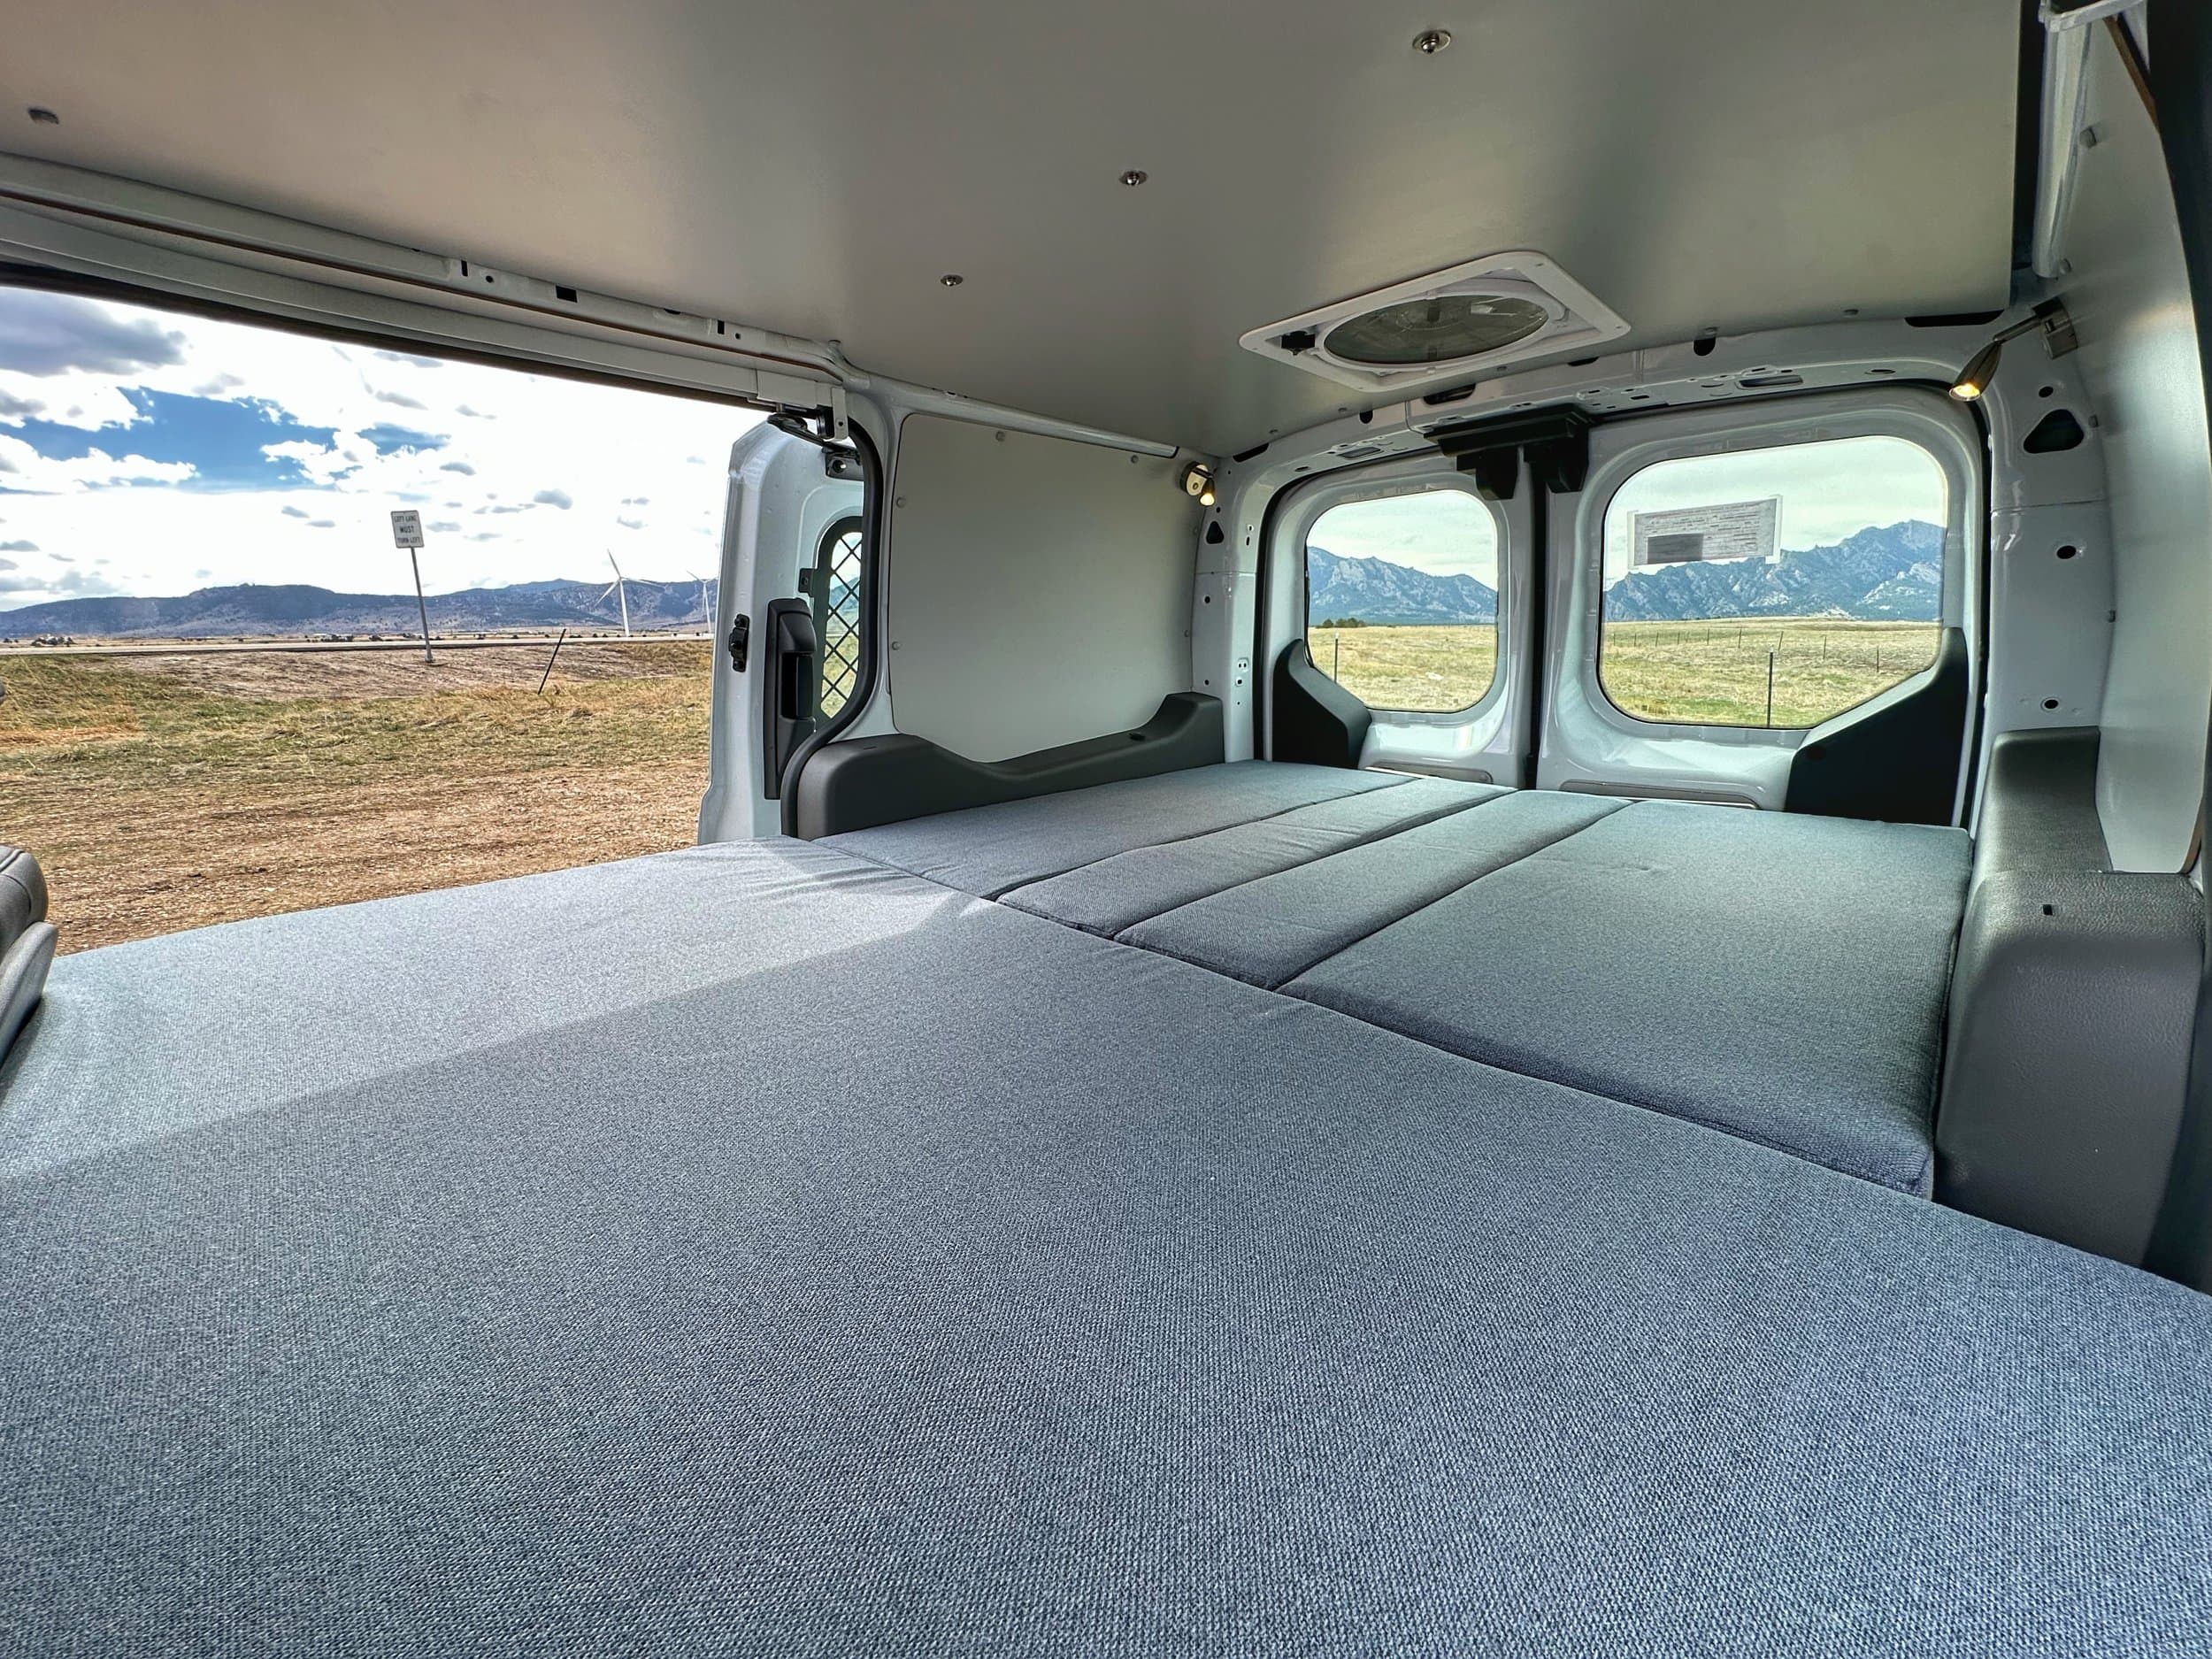 Low-End van build in Colorado